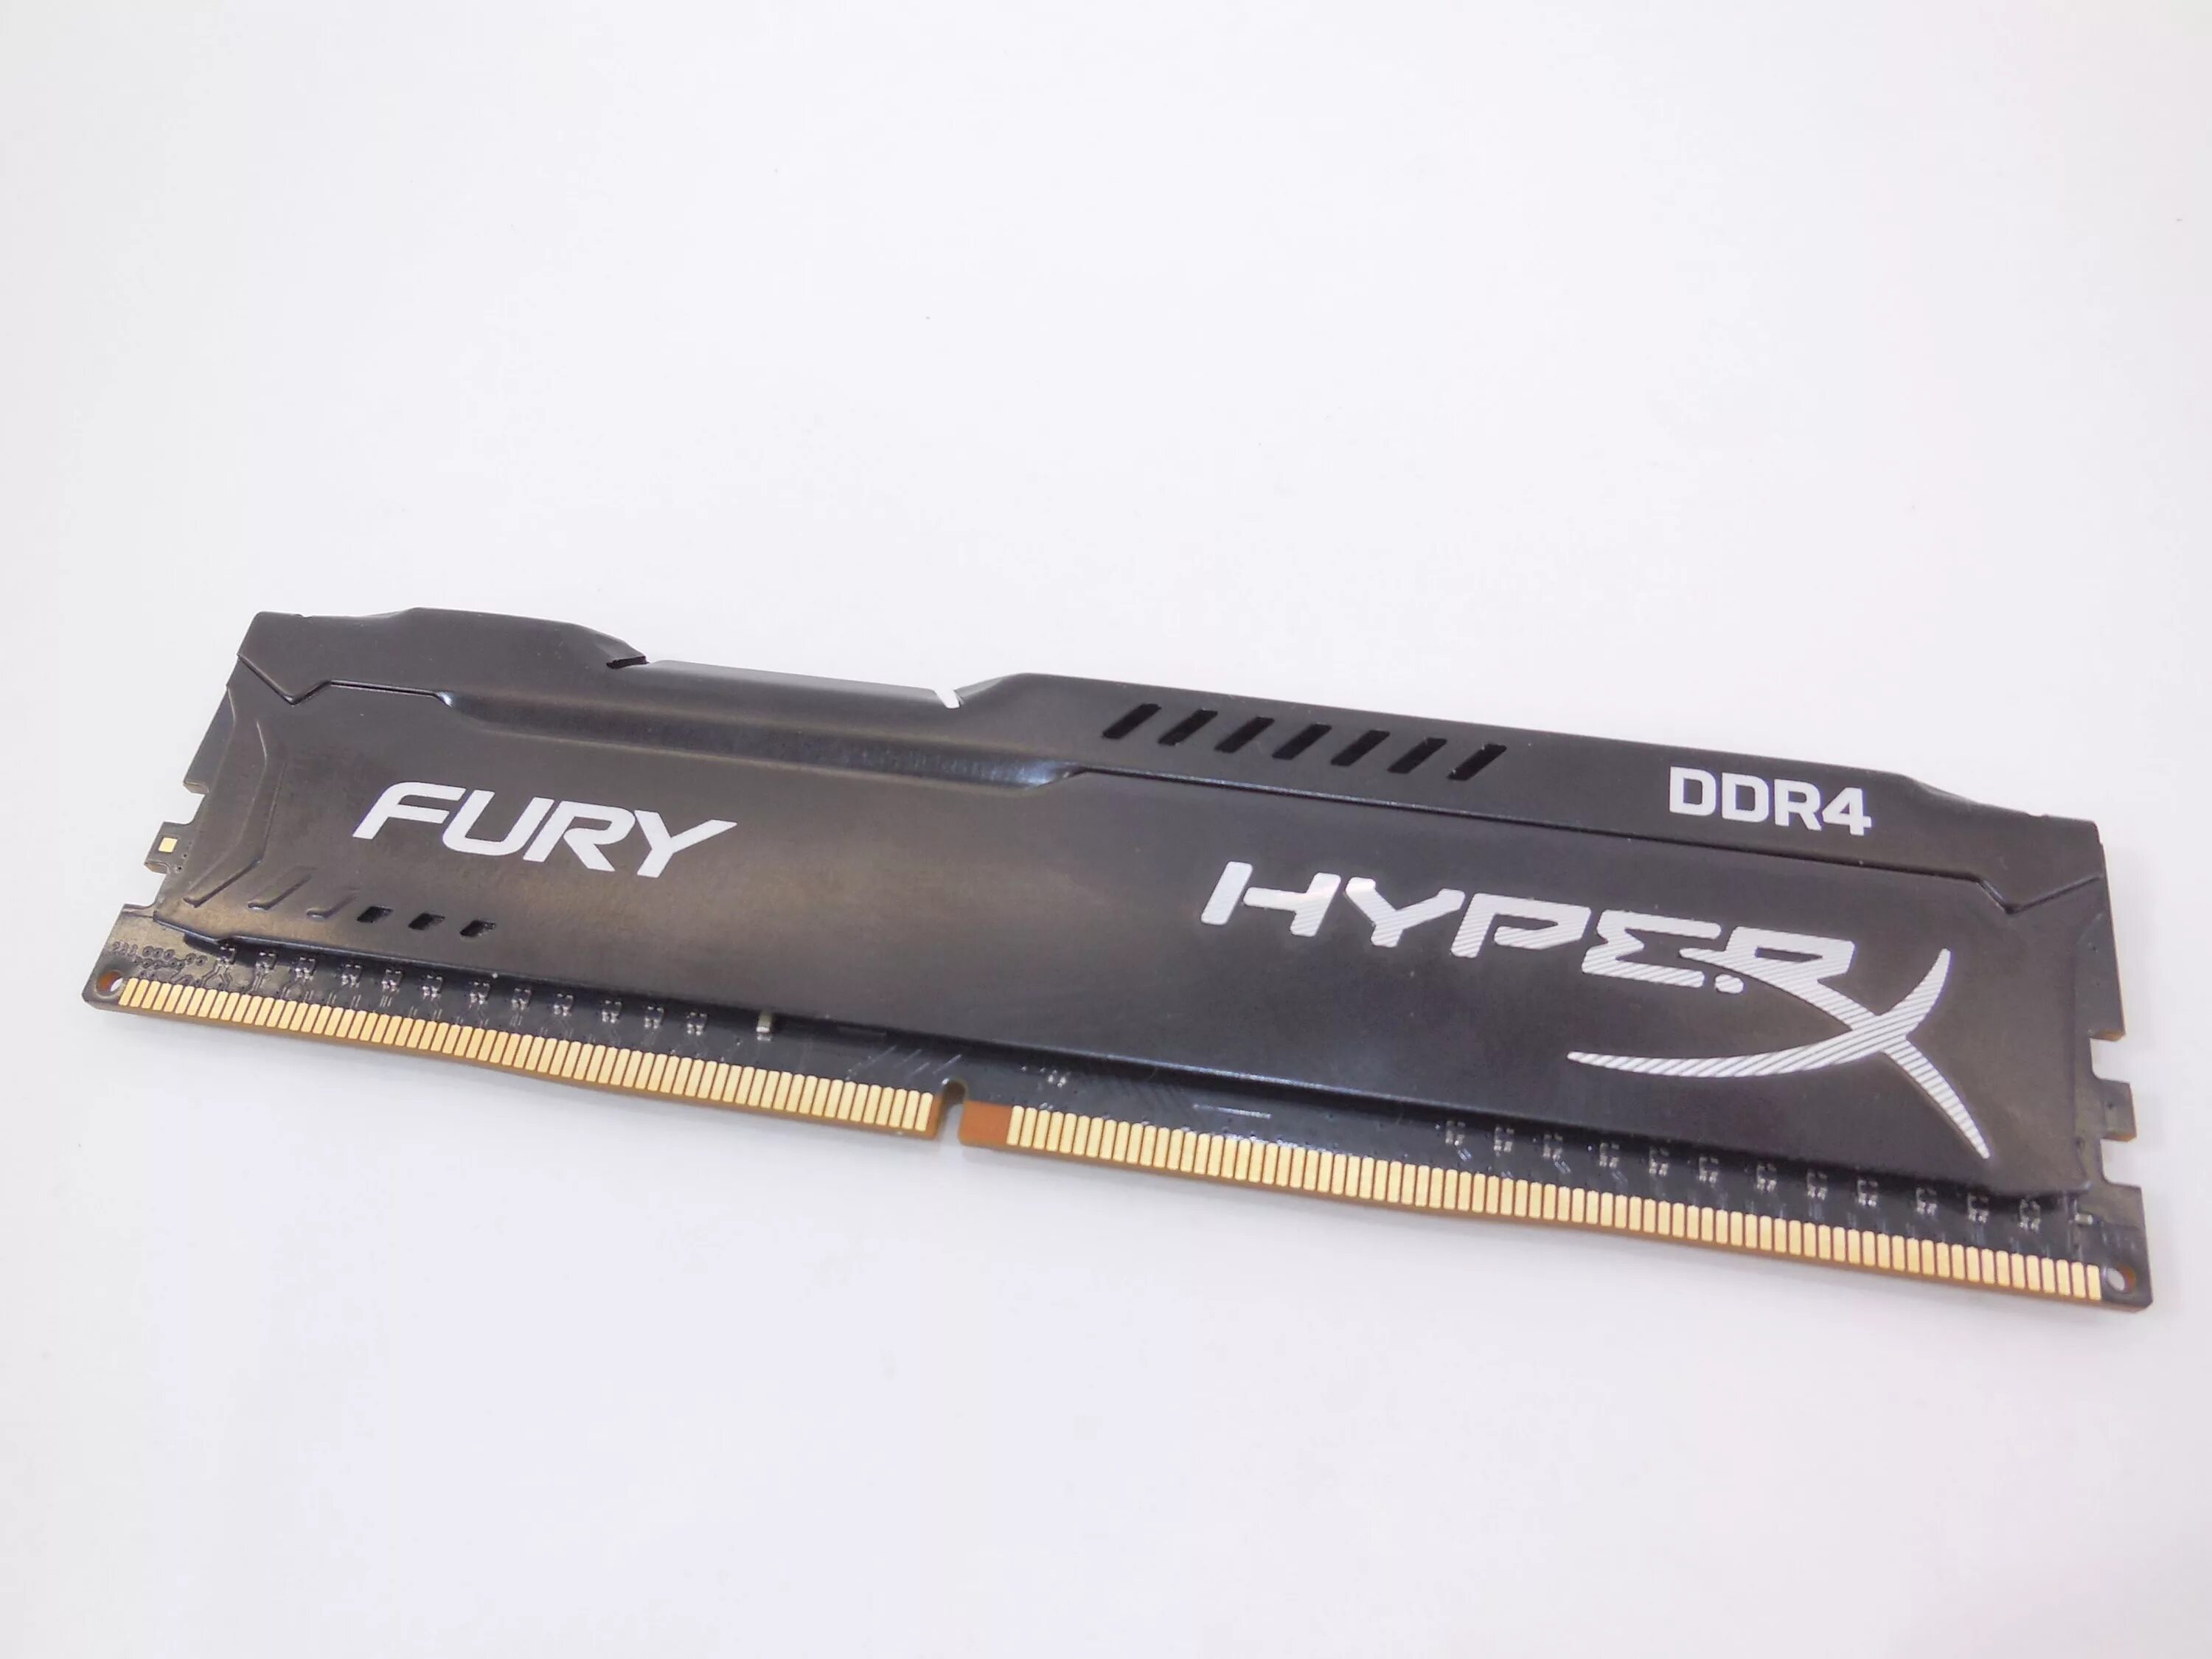 HYPERX Fury ddr4 8gb. Оперативная память HYPERX Fury 8gb ddr4. Hyper x ddr4 8gb. Оперативная память HYPERX Fury 4gb ddr4. Оперативная память hyperx fury 8gb